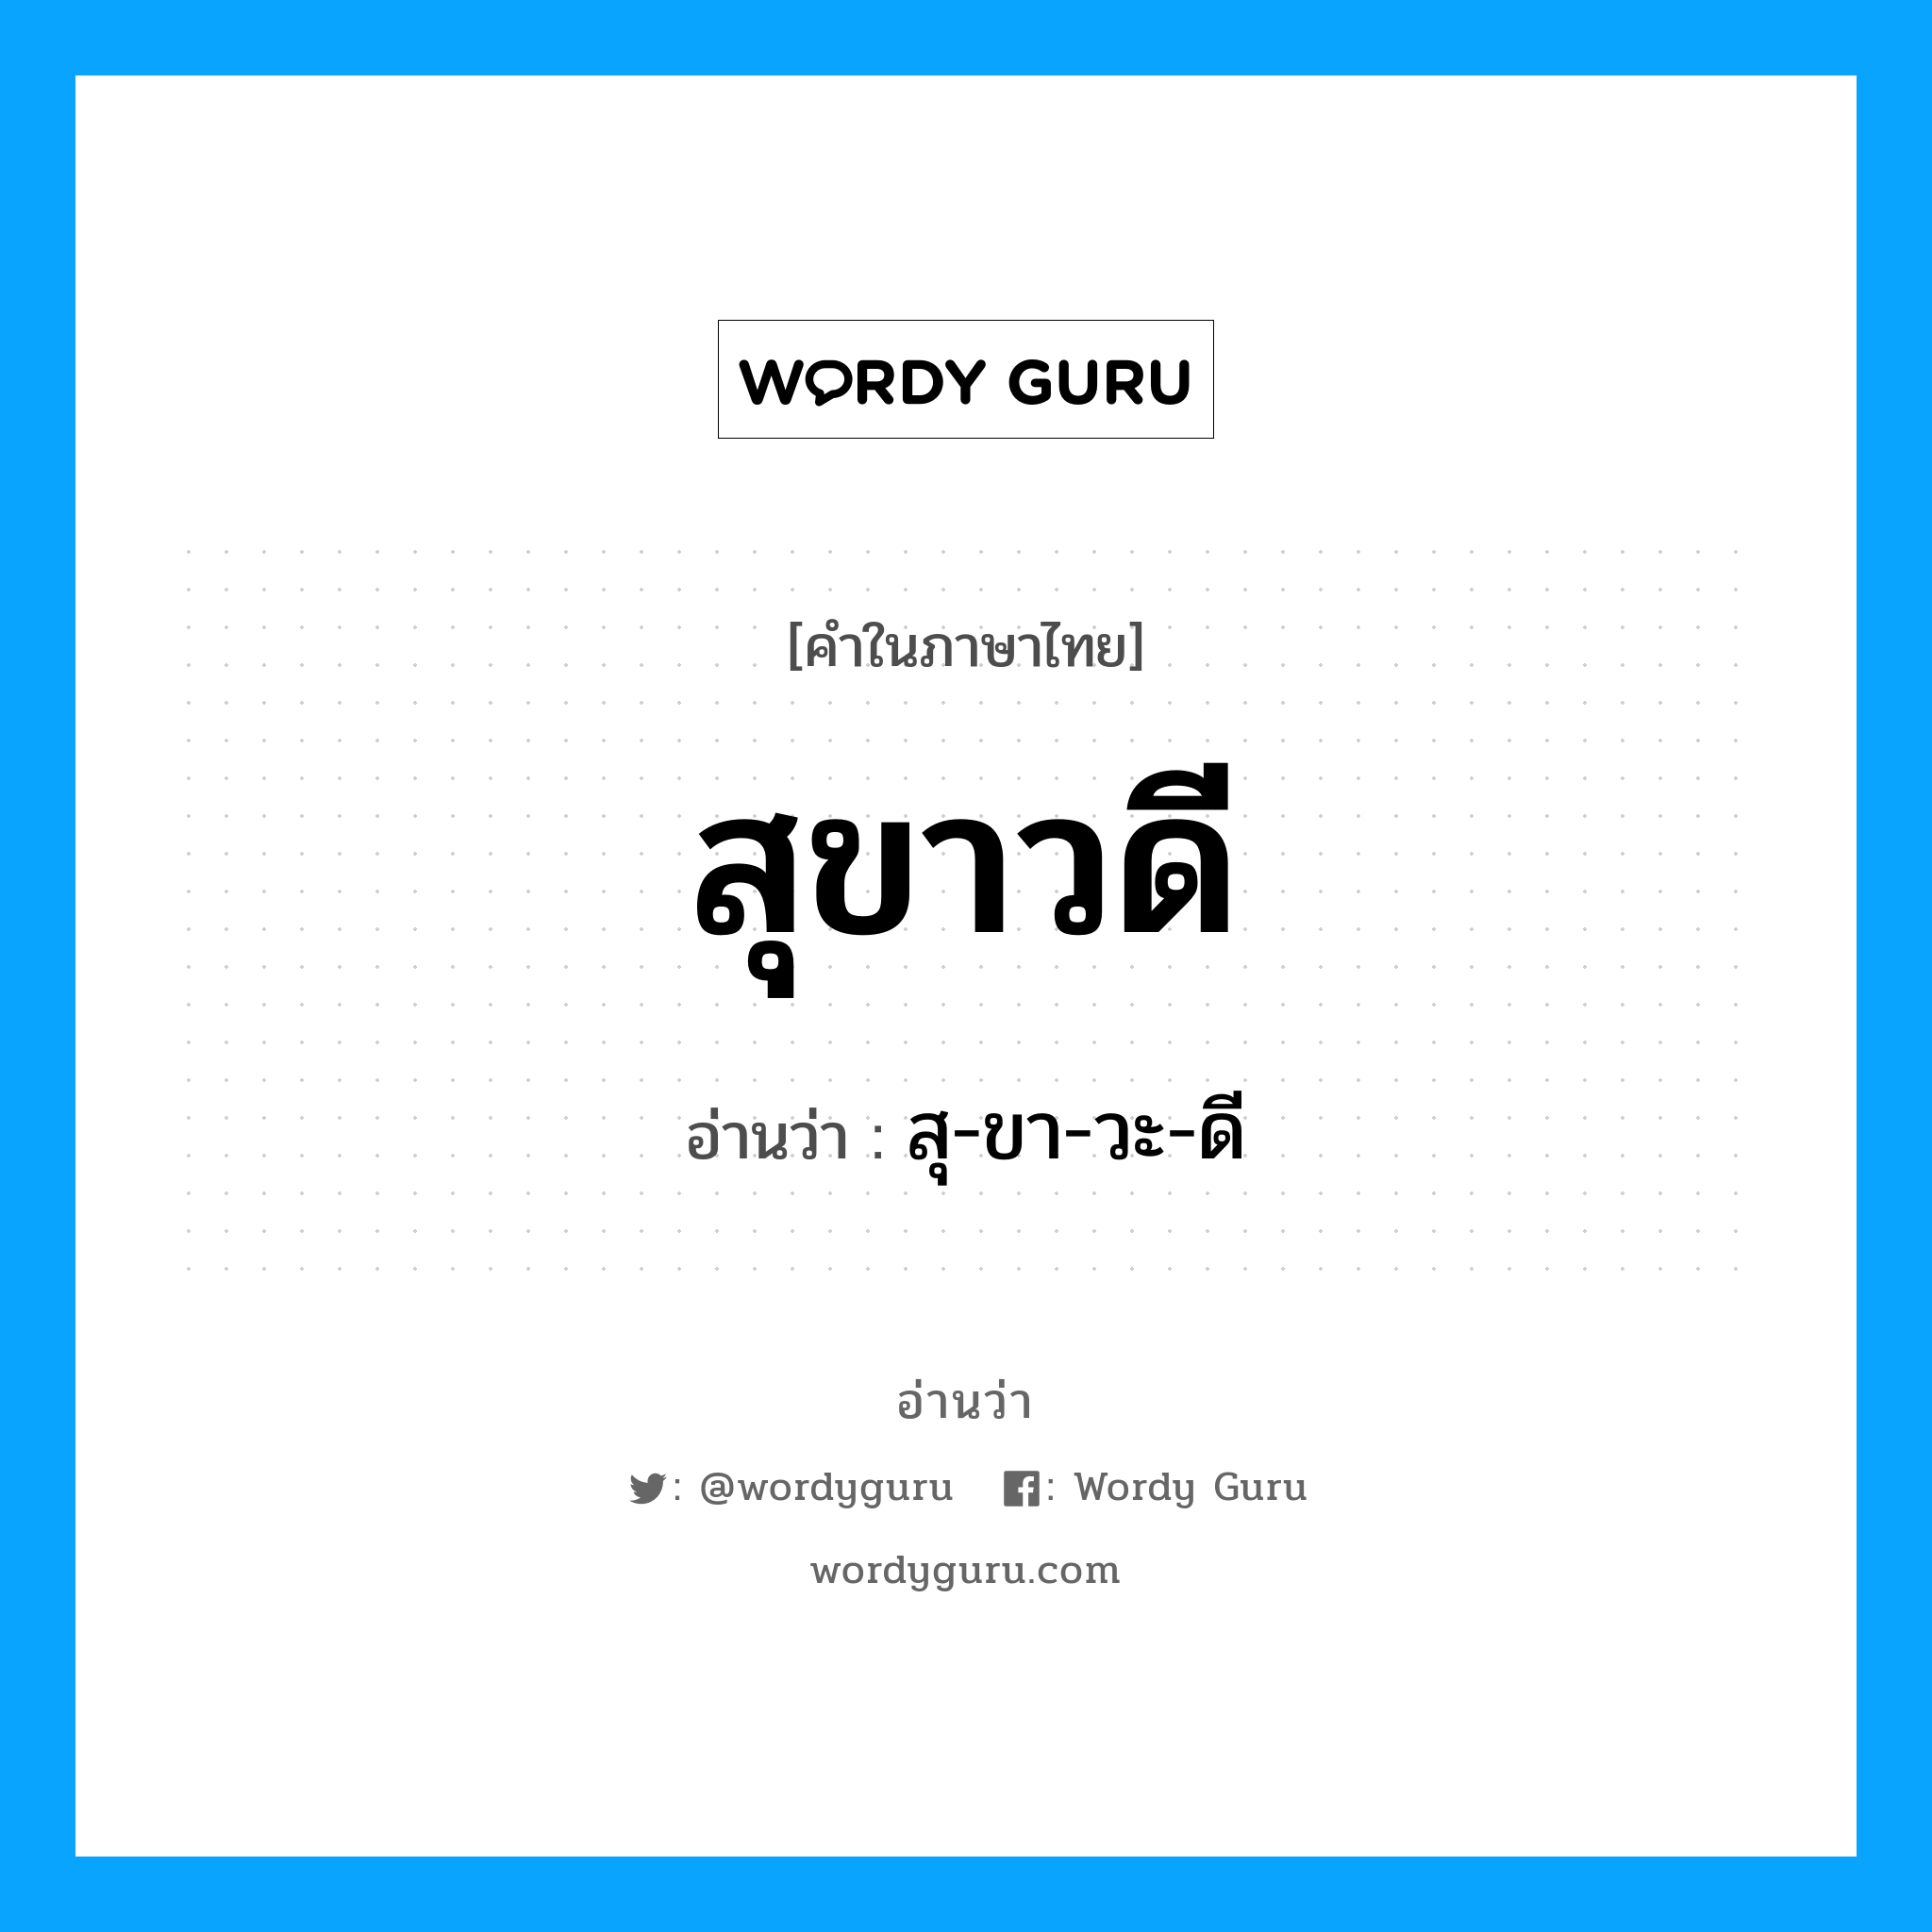 สุ-ขา-วะ-ดี เป็นคำอ่านของคำไหน?, คำในภาษาไทย สุ-ขา-วะ-ดี อ่านว่า สุขาวดี